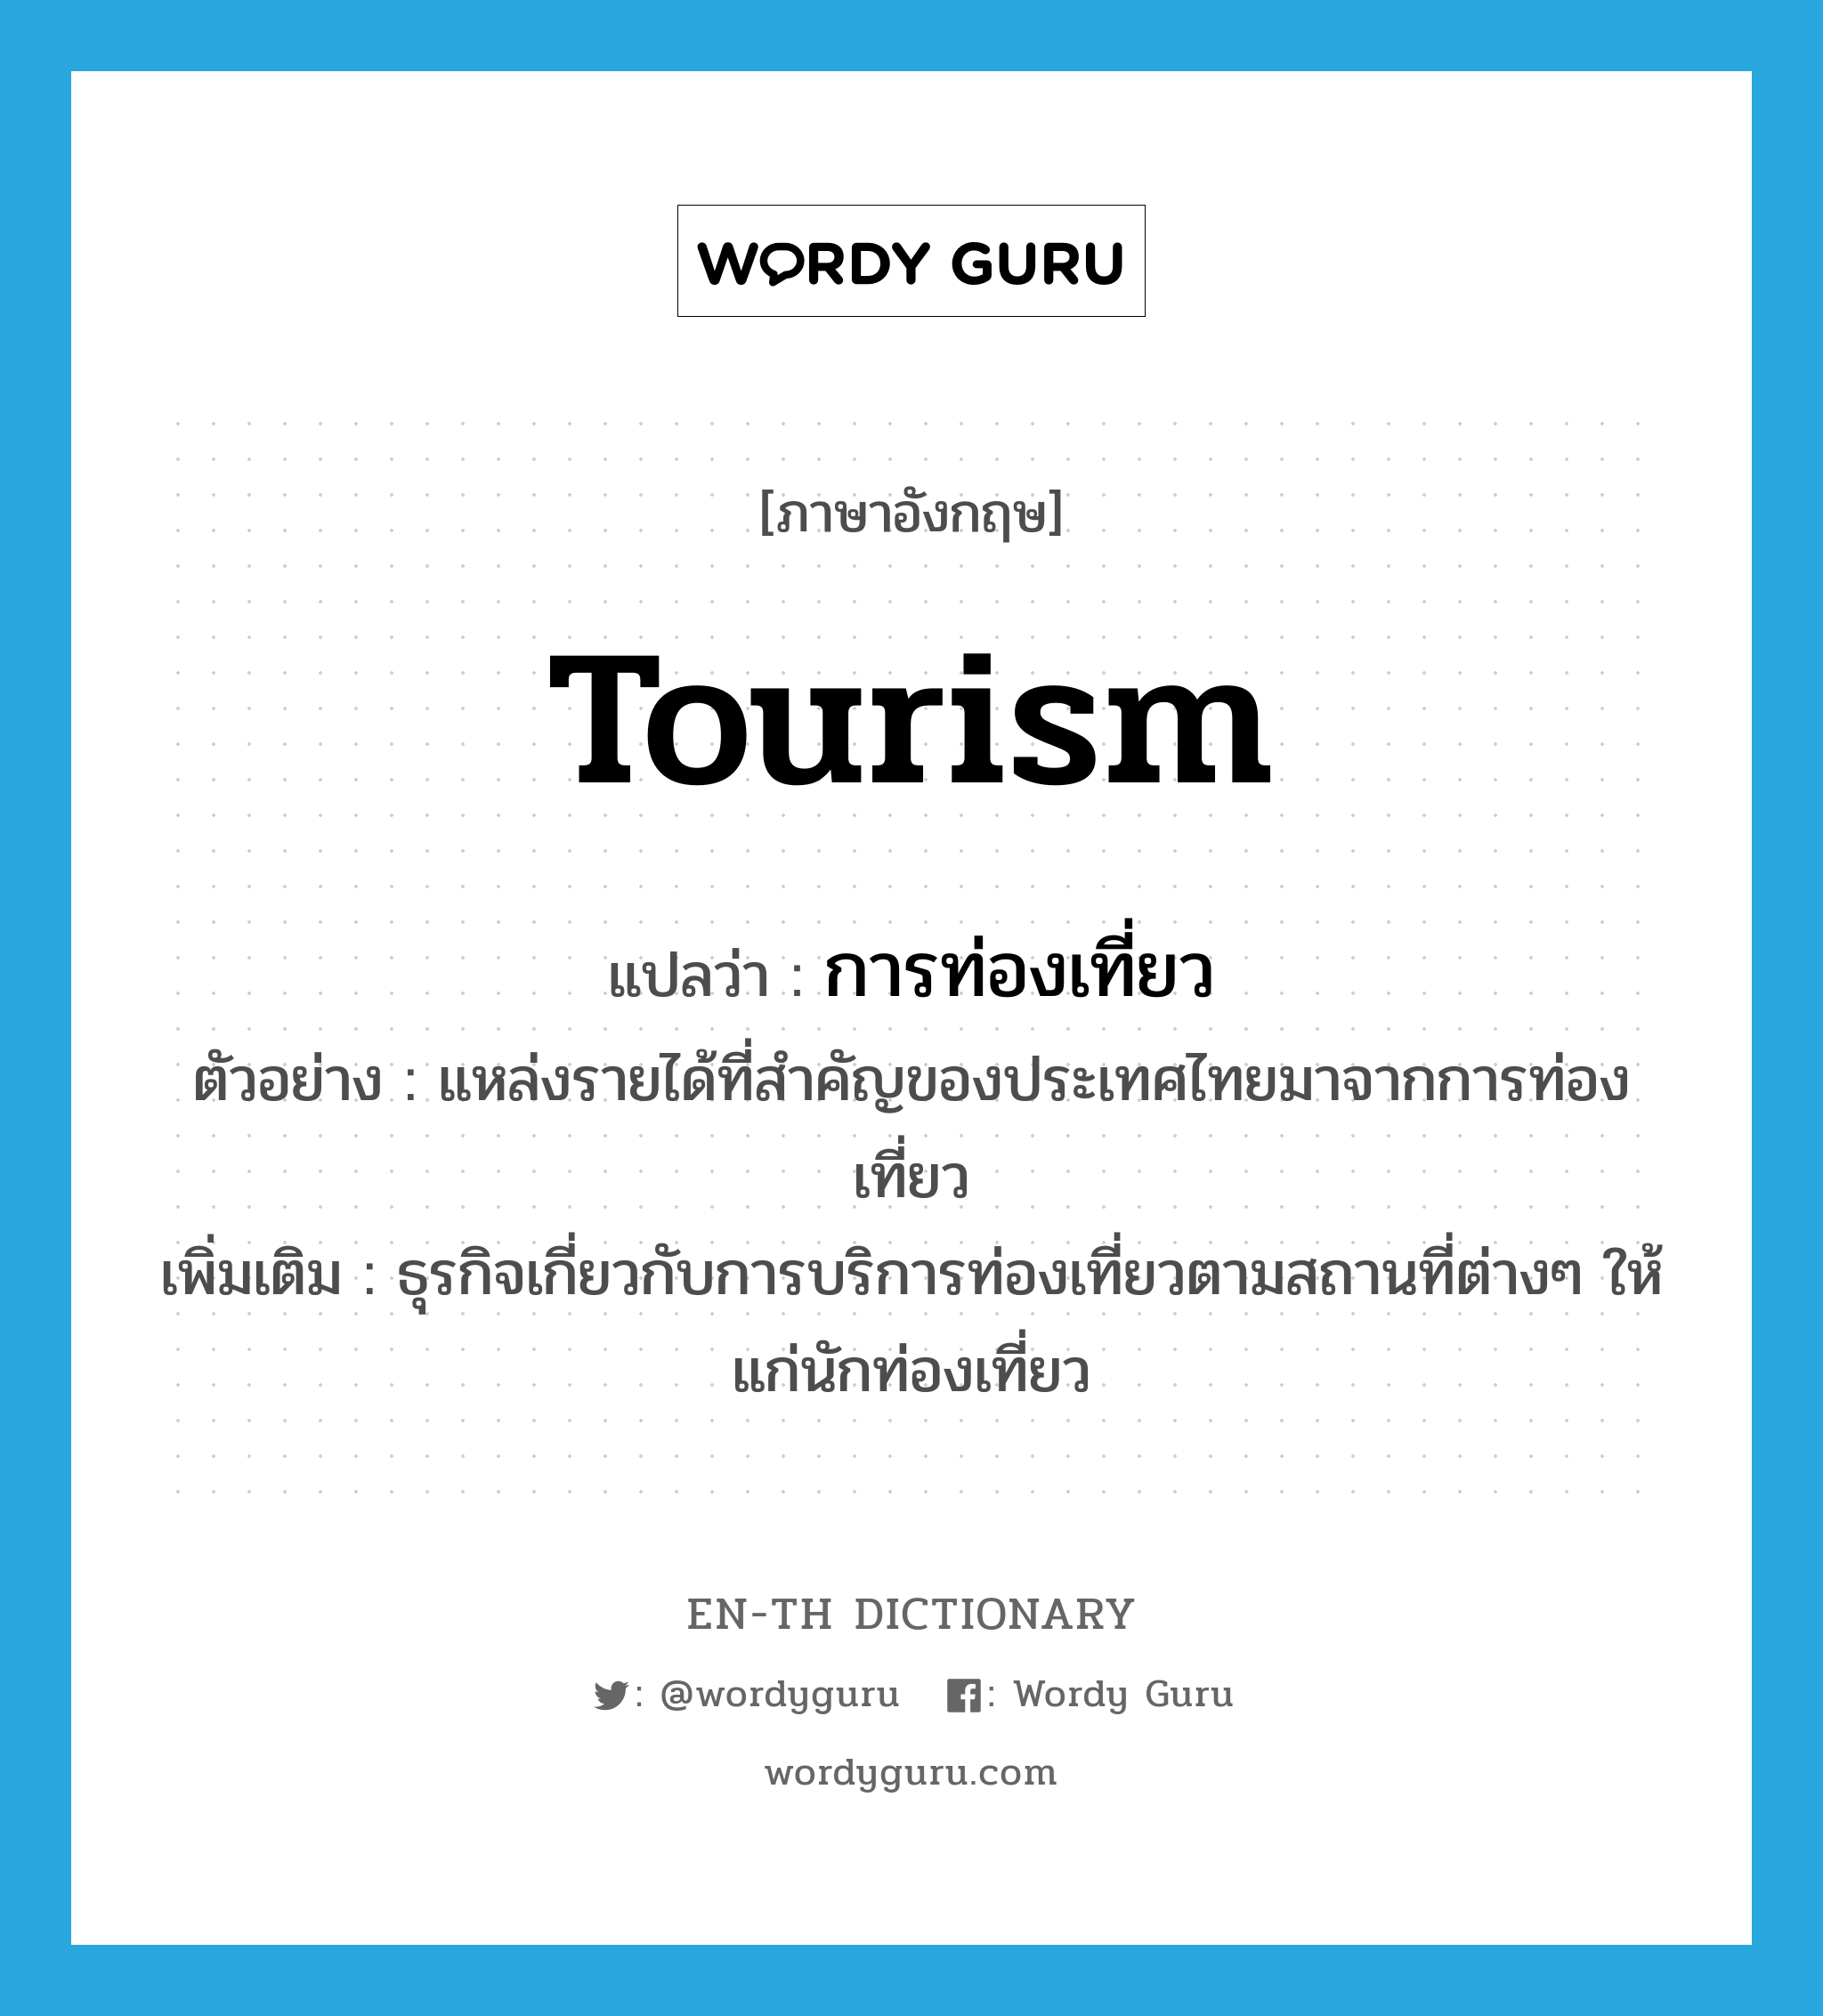 การท่องเที่ยว ภาษาอังกฤษ?, คำศัพท์ภาษาอังกฤษ การท่องเที่ยว แปลว่า tourism ประเภท N ตัวอย่าง แหล่งรายได้ที่สำคัญของประเทศไทยมาจากการท่องเที่ยว เพิ่มเติม ธุรกิจเกี่ยวกับการบริการท่องเที่ยวตามสถานที่ต่างๆ ให้แก่นักท่องเที่ยว หมวด N